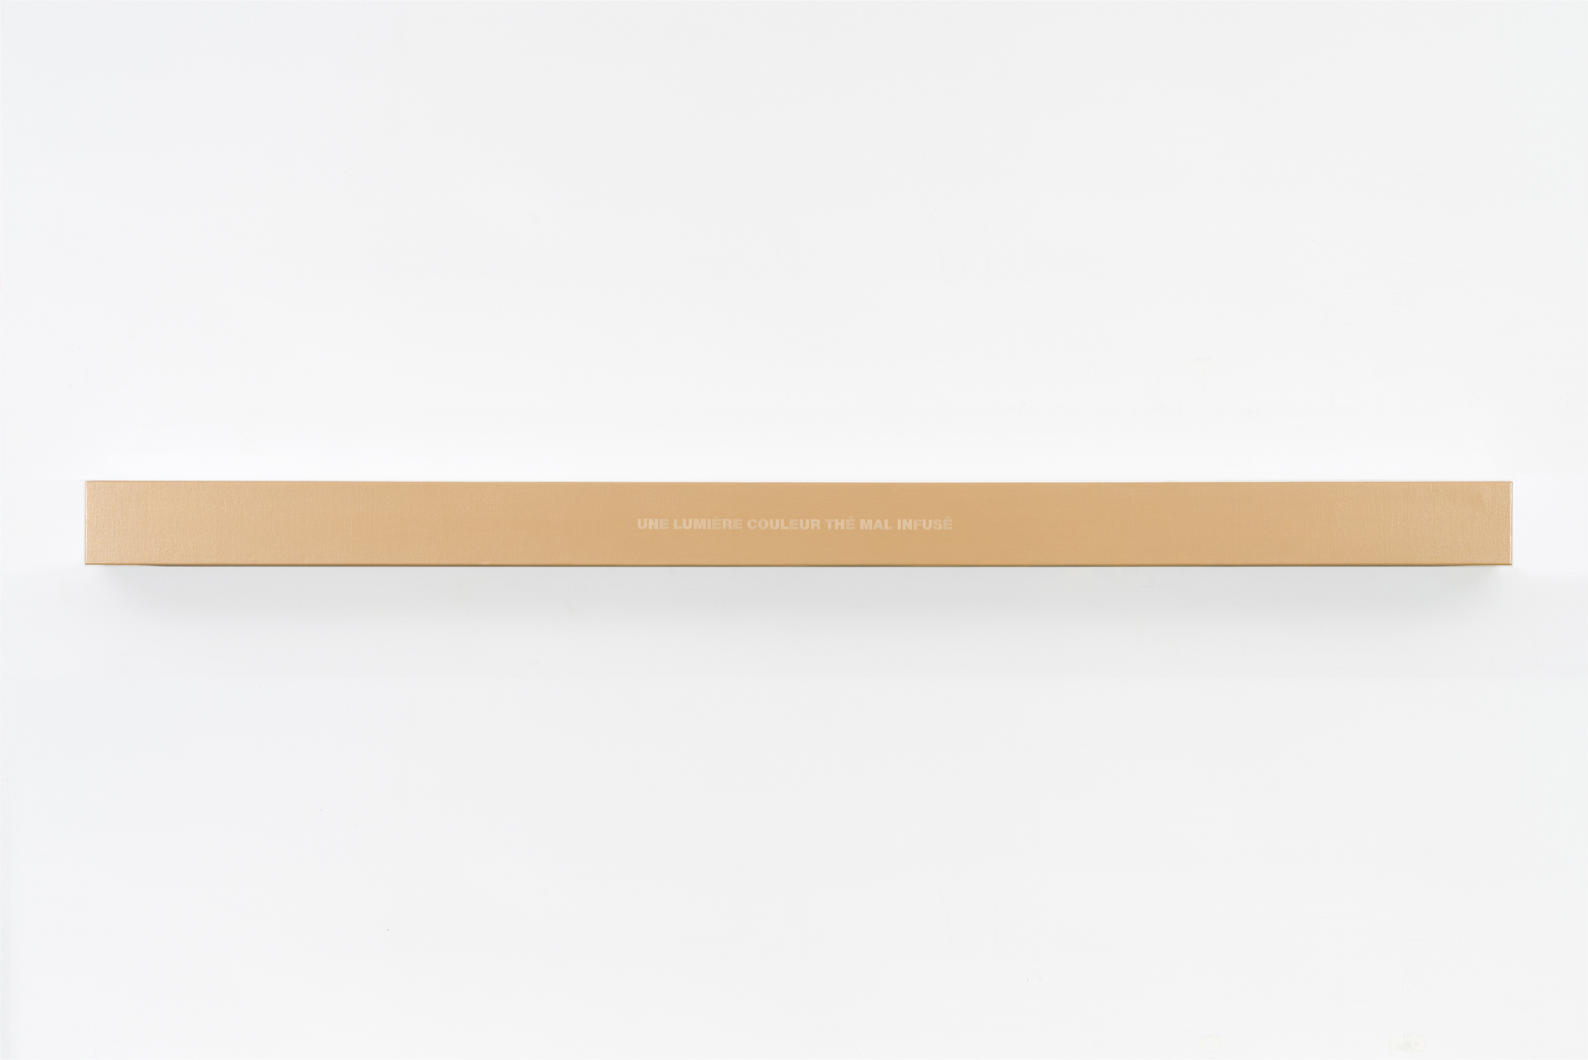 Francine Savard, Lumière couleur thé, 2018, Médiums mixtes sur toile marouflée sur caisson de bois, 10,16 × 177,8 × 10,16 cm / 4 x 70 x 4 pouces